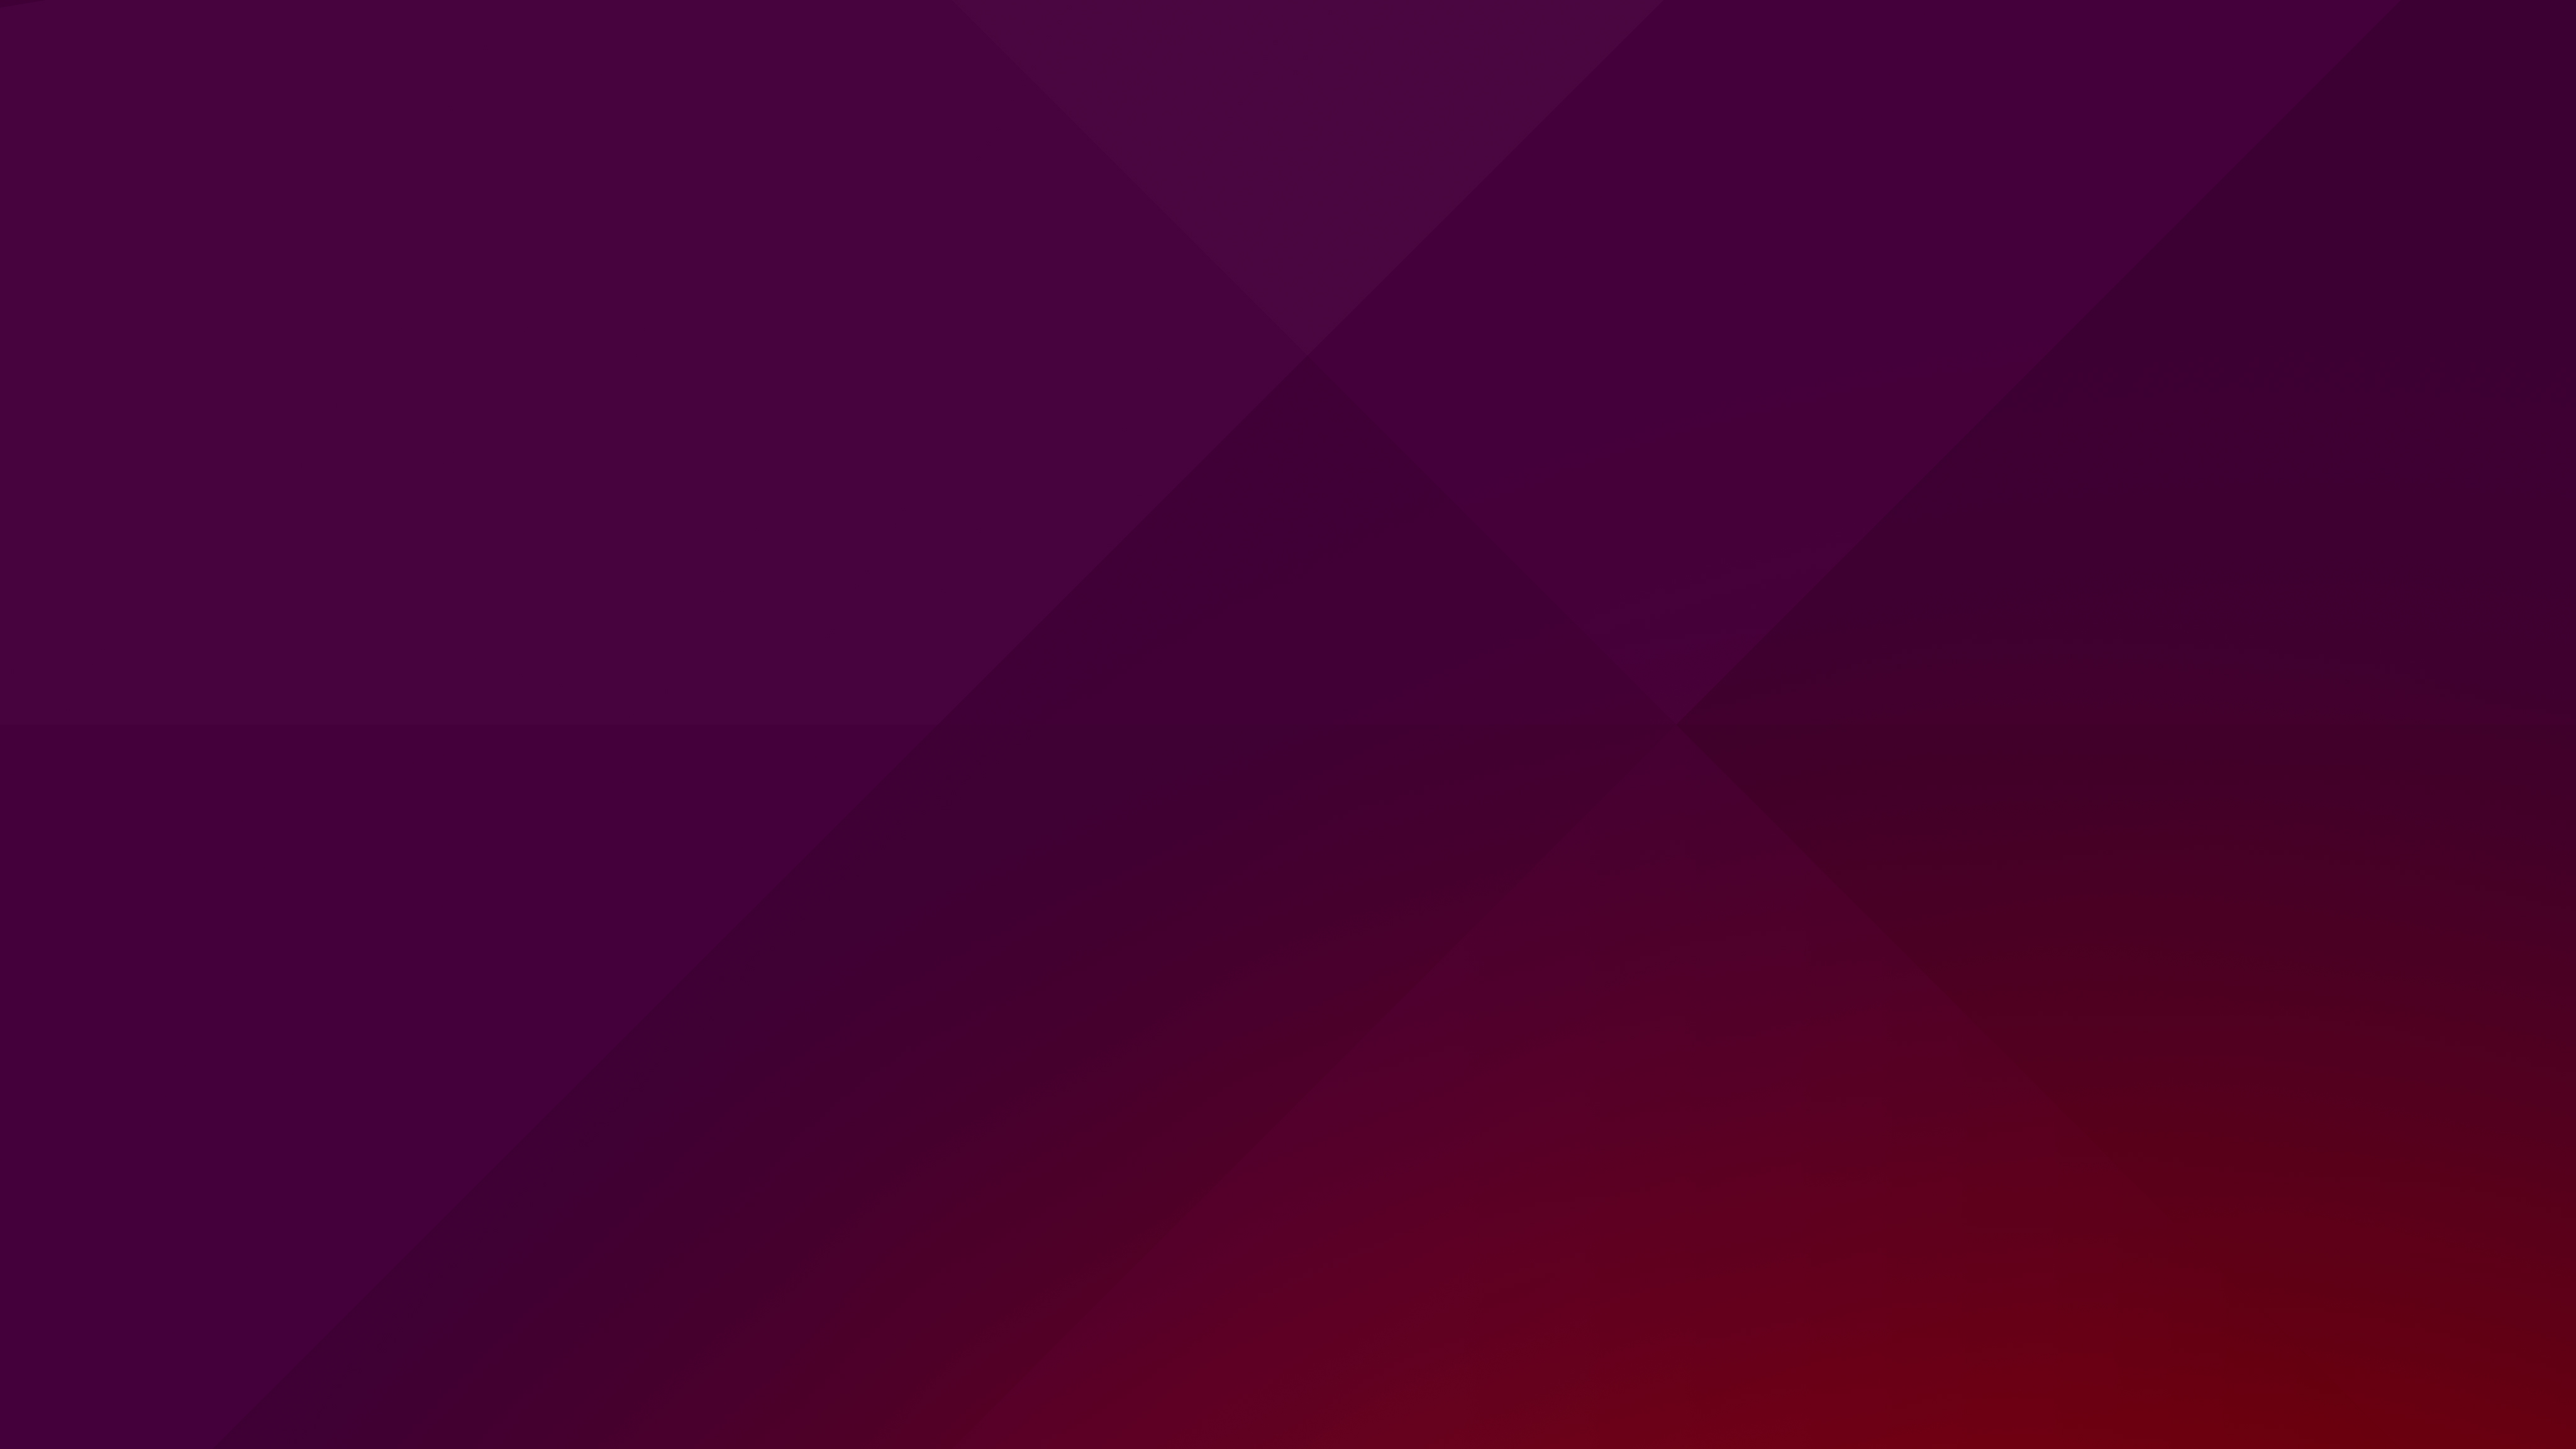 Suru Desktop Wallpaper Ubuntu Vivid Portallinux